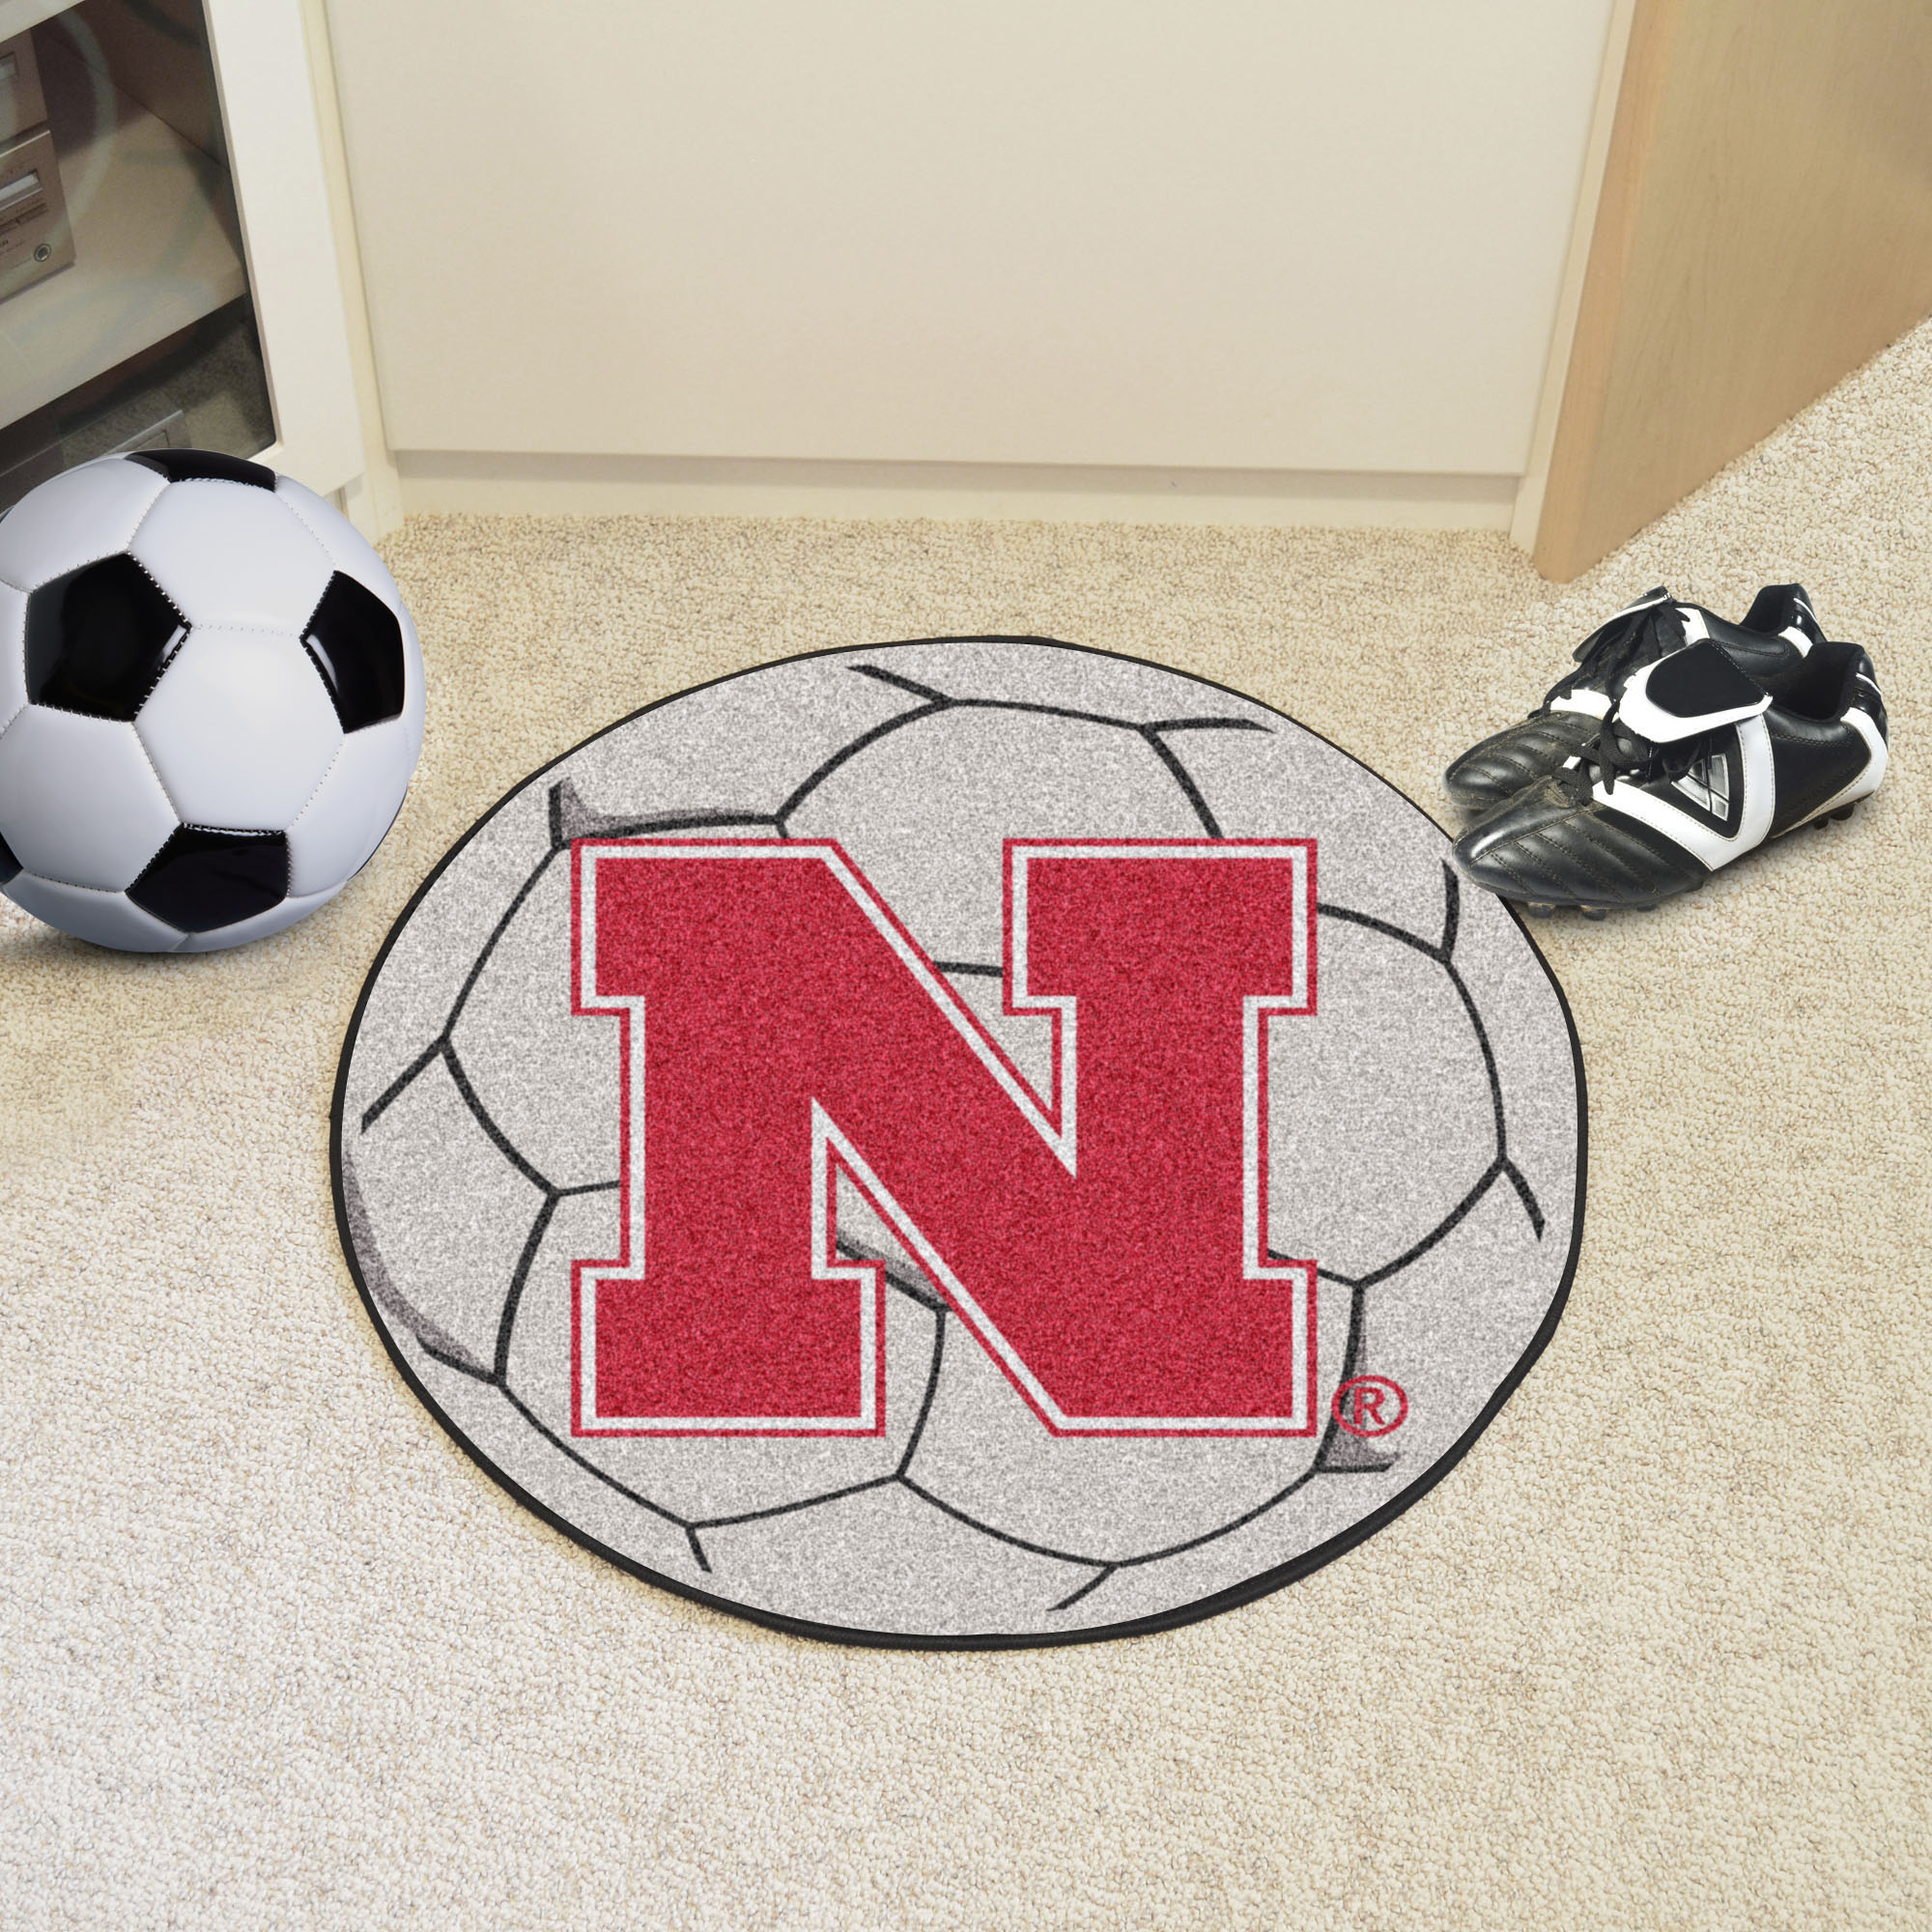 University of Nebraska Cornhuskers Ball Shaped Area Rugs (Ball Shaped Area Rugs: Soccer Ball)